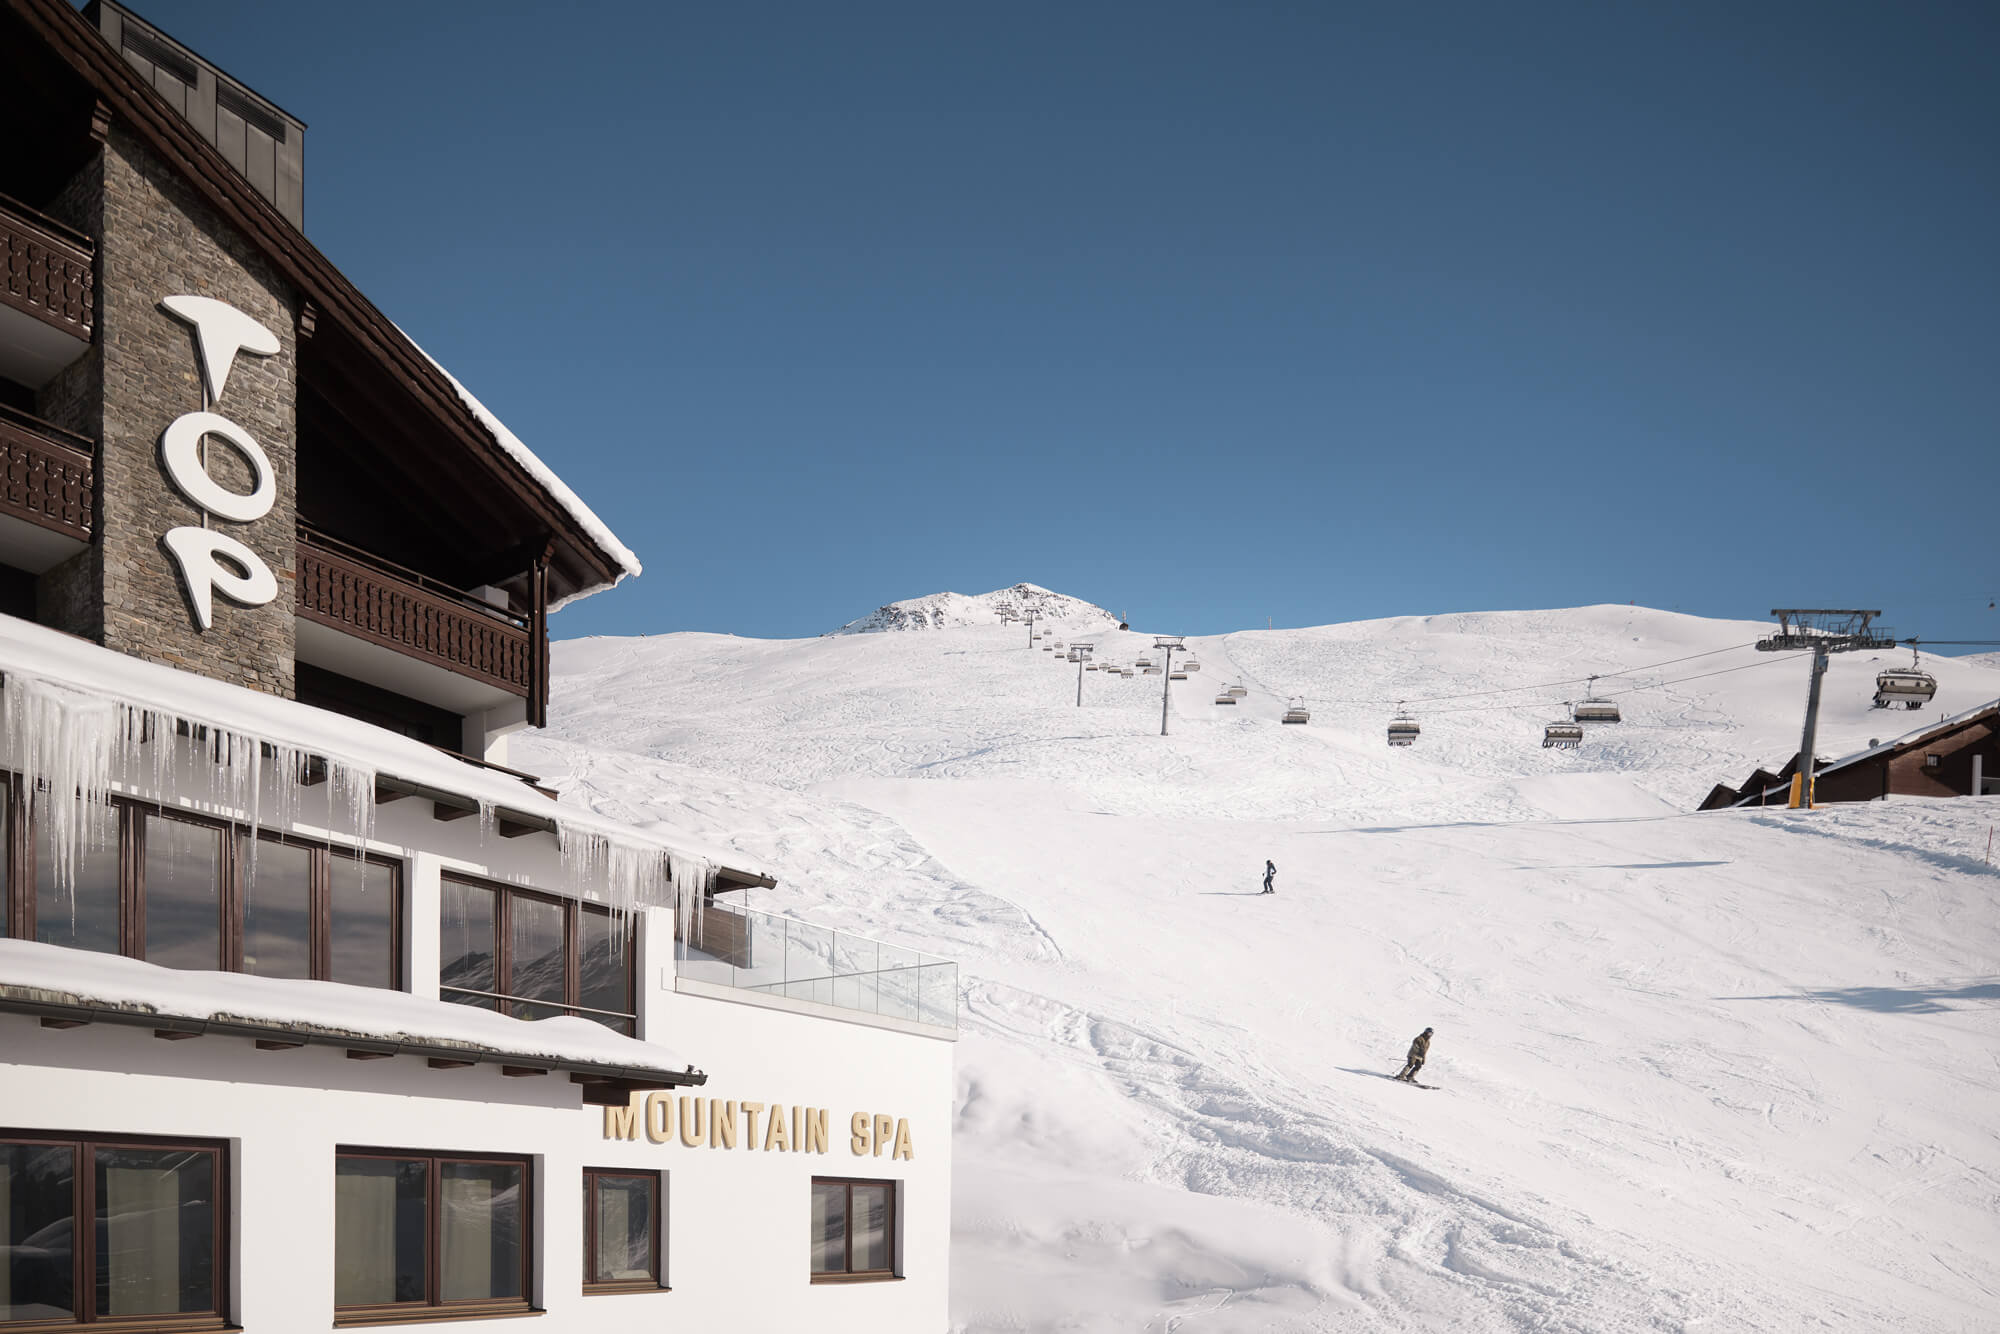 Ein Skigebäude mit einer Person, die auf einem schneebedeckten Hang neben einem Skilift ski-fährt